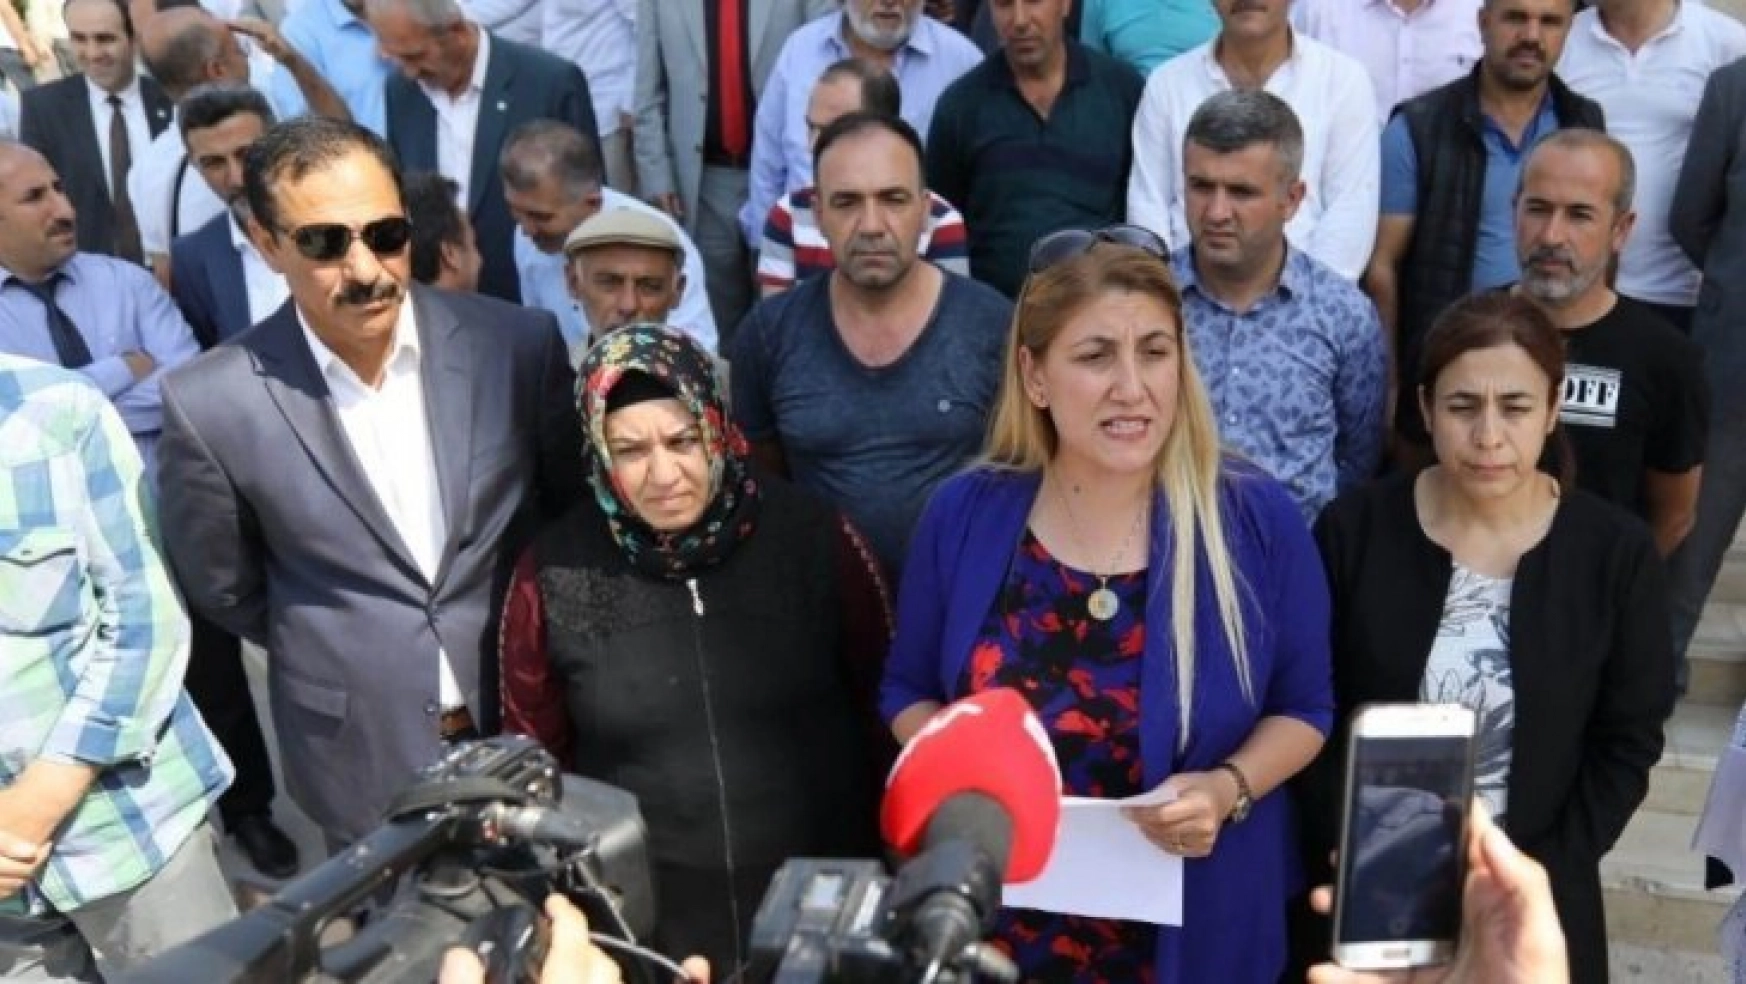 Mardin'den, Diyarbakır'da evlat nöbeti tutan alilere destek